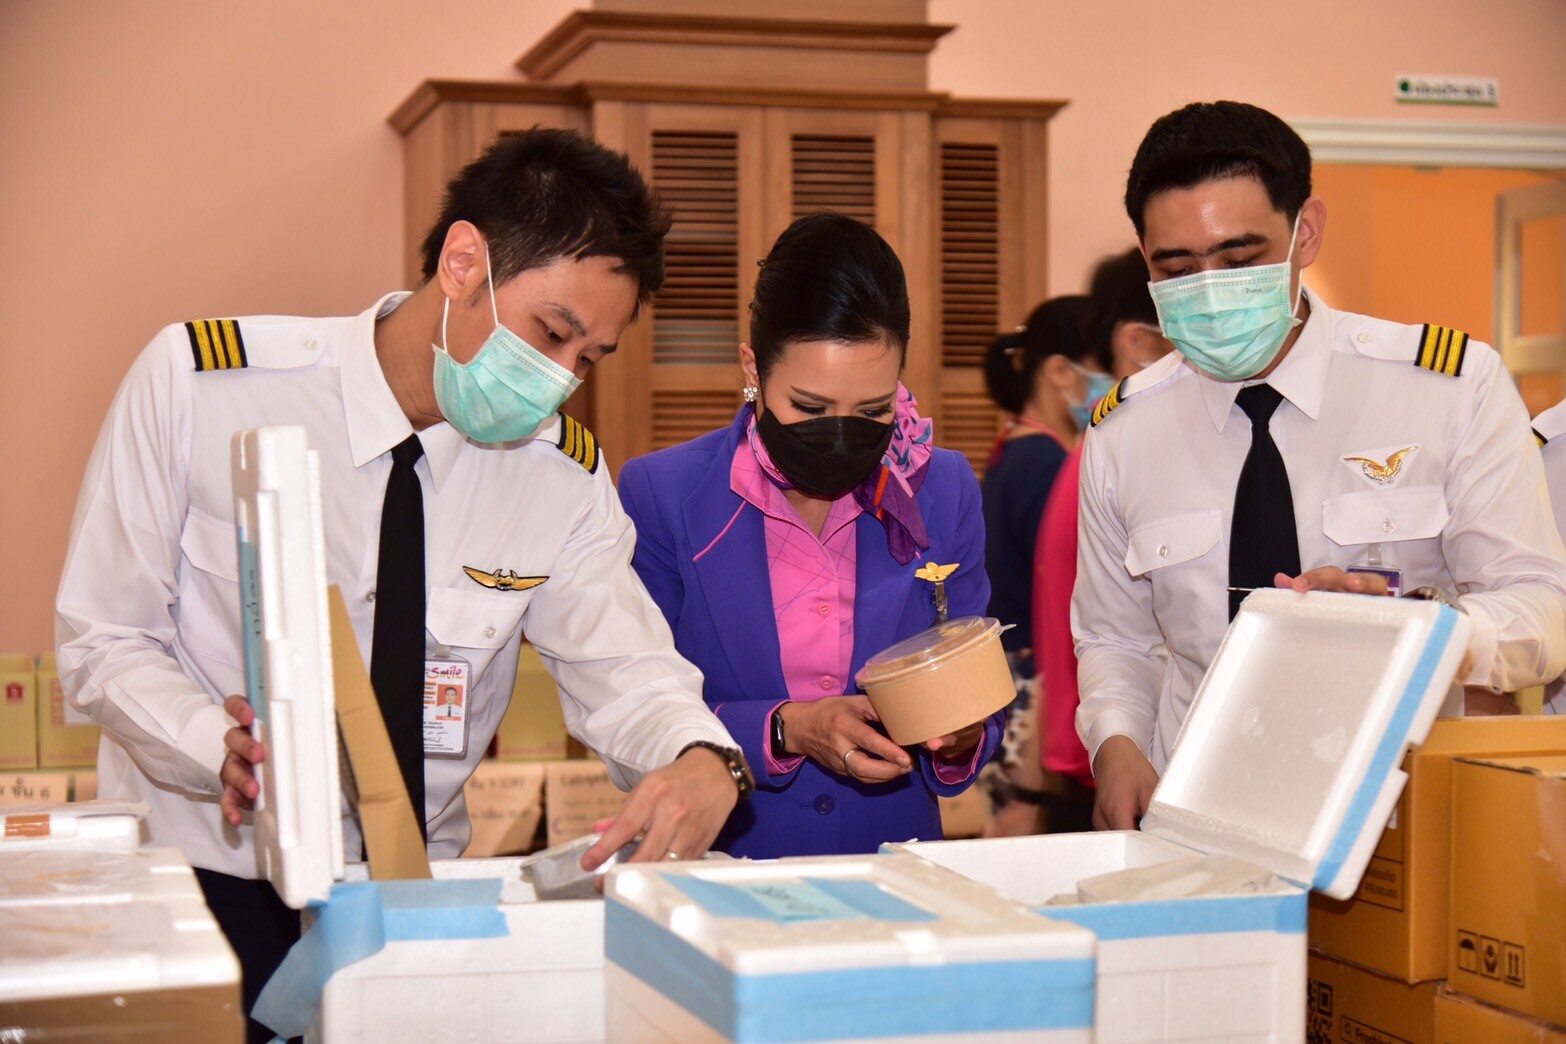 การบินไทยร่วมกับไทยสมายล์จัดโครงการ “ด้วยรักและรอยยิ้ม” ส่งพลังใจให้กับทีมแพทย์ไทยสู้วิกฤตโควิด-19